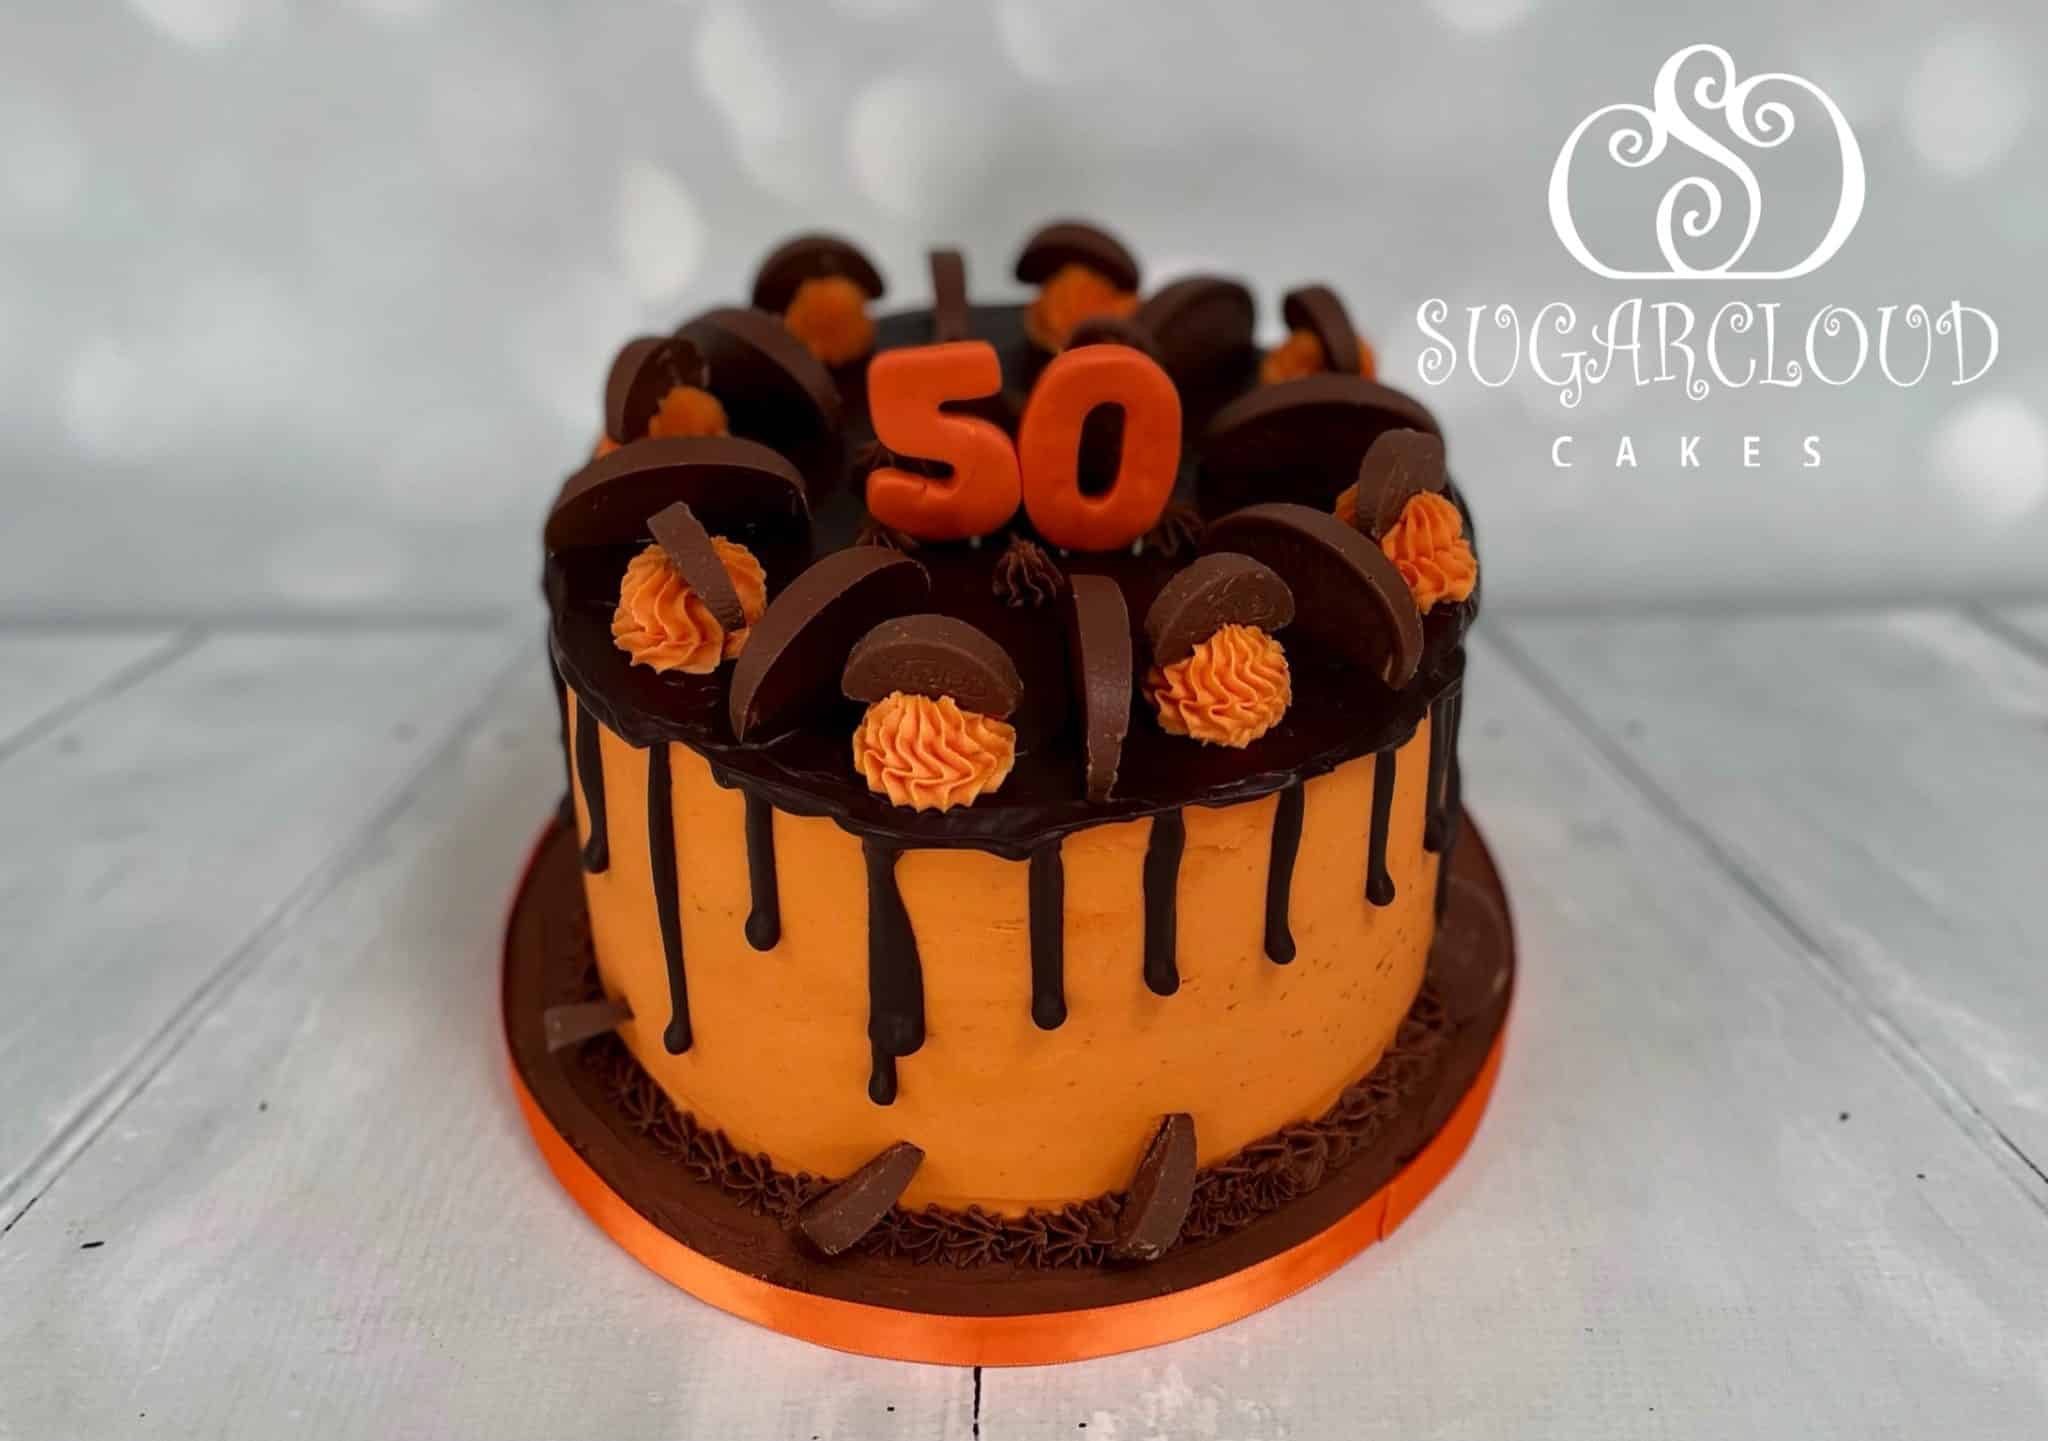 Chocolate orange drip cake :) : r/cake